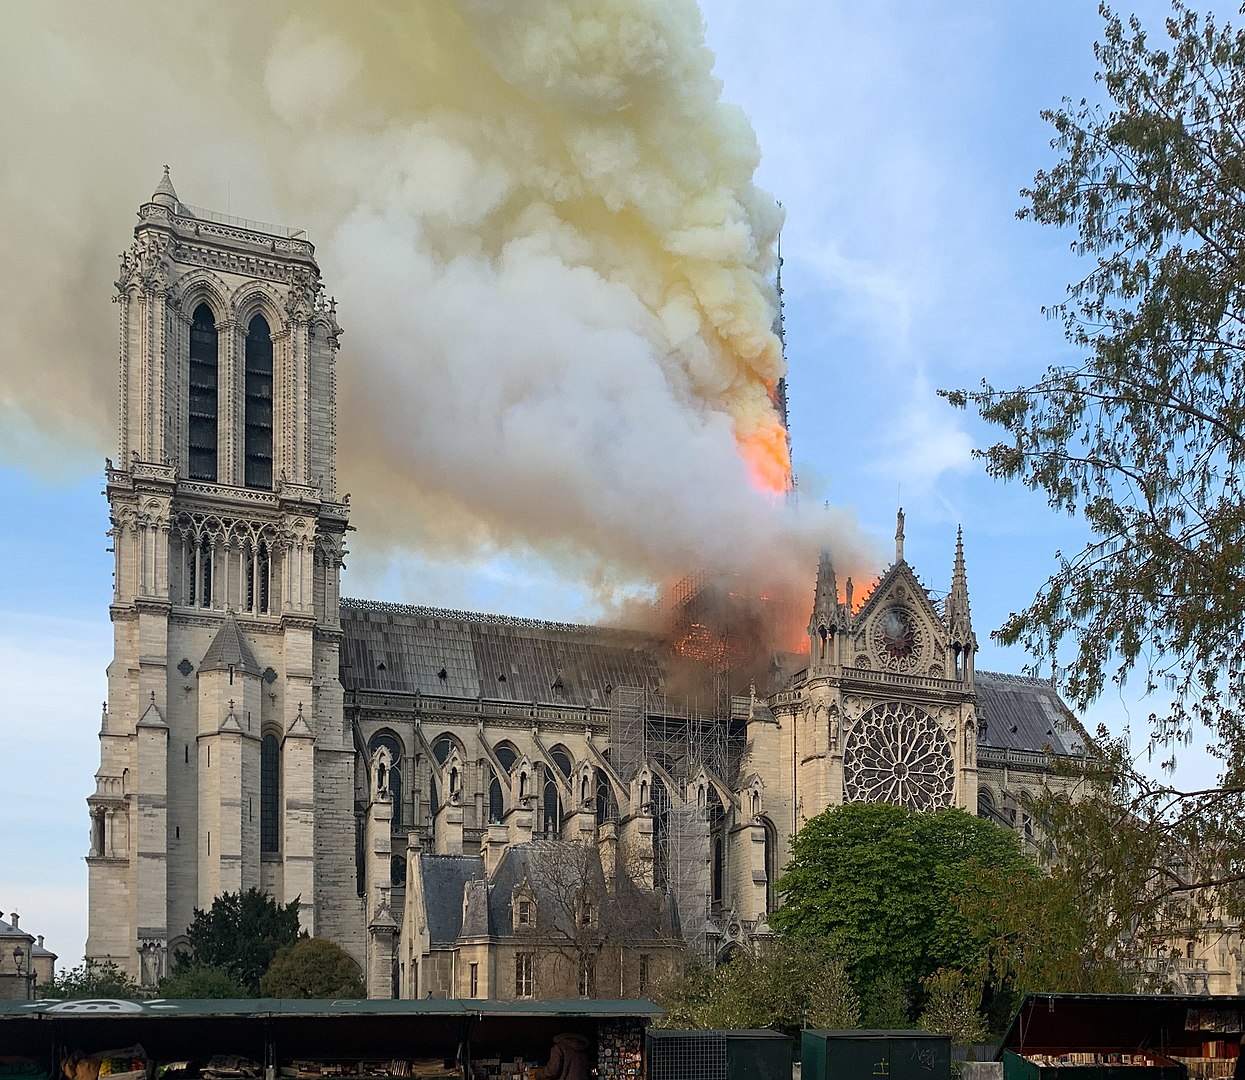 Katedrala Notre-Dame uskoro će se ponovno otvoriti 5 godina nakon požara